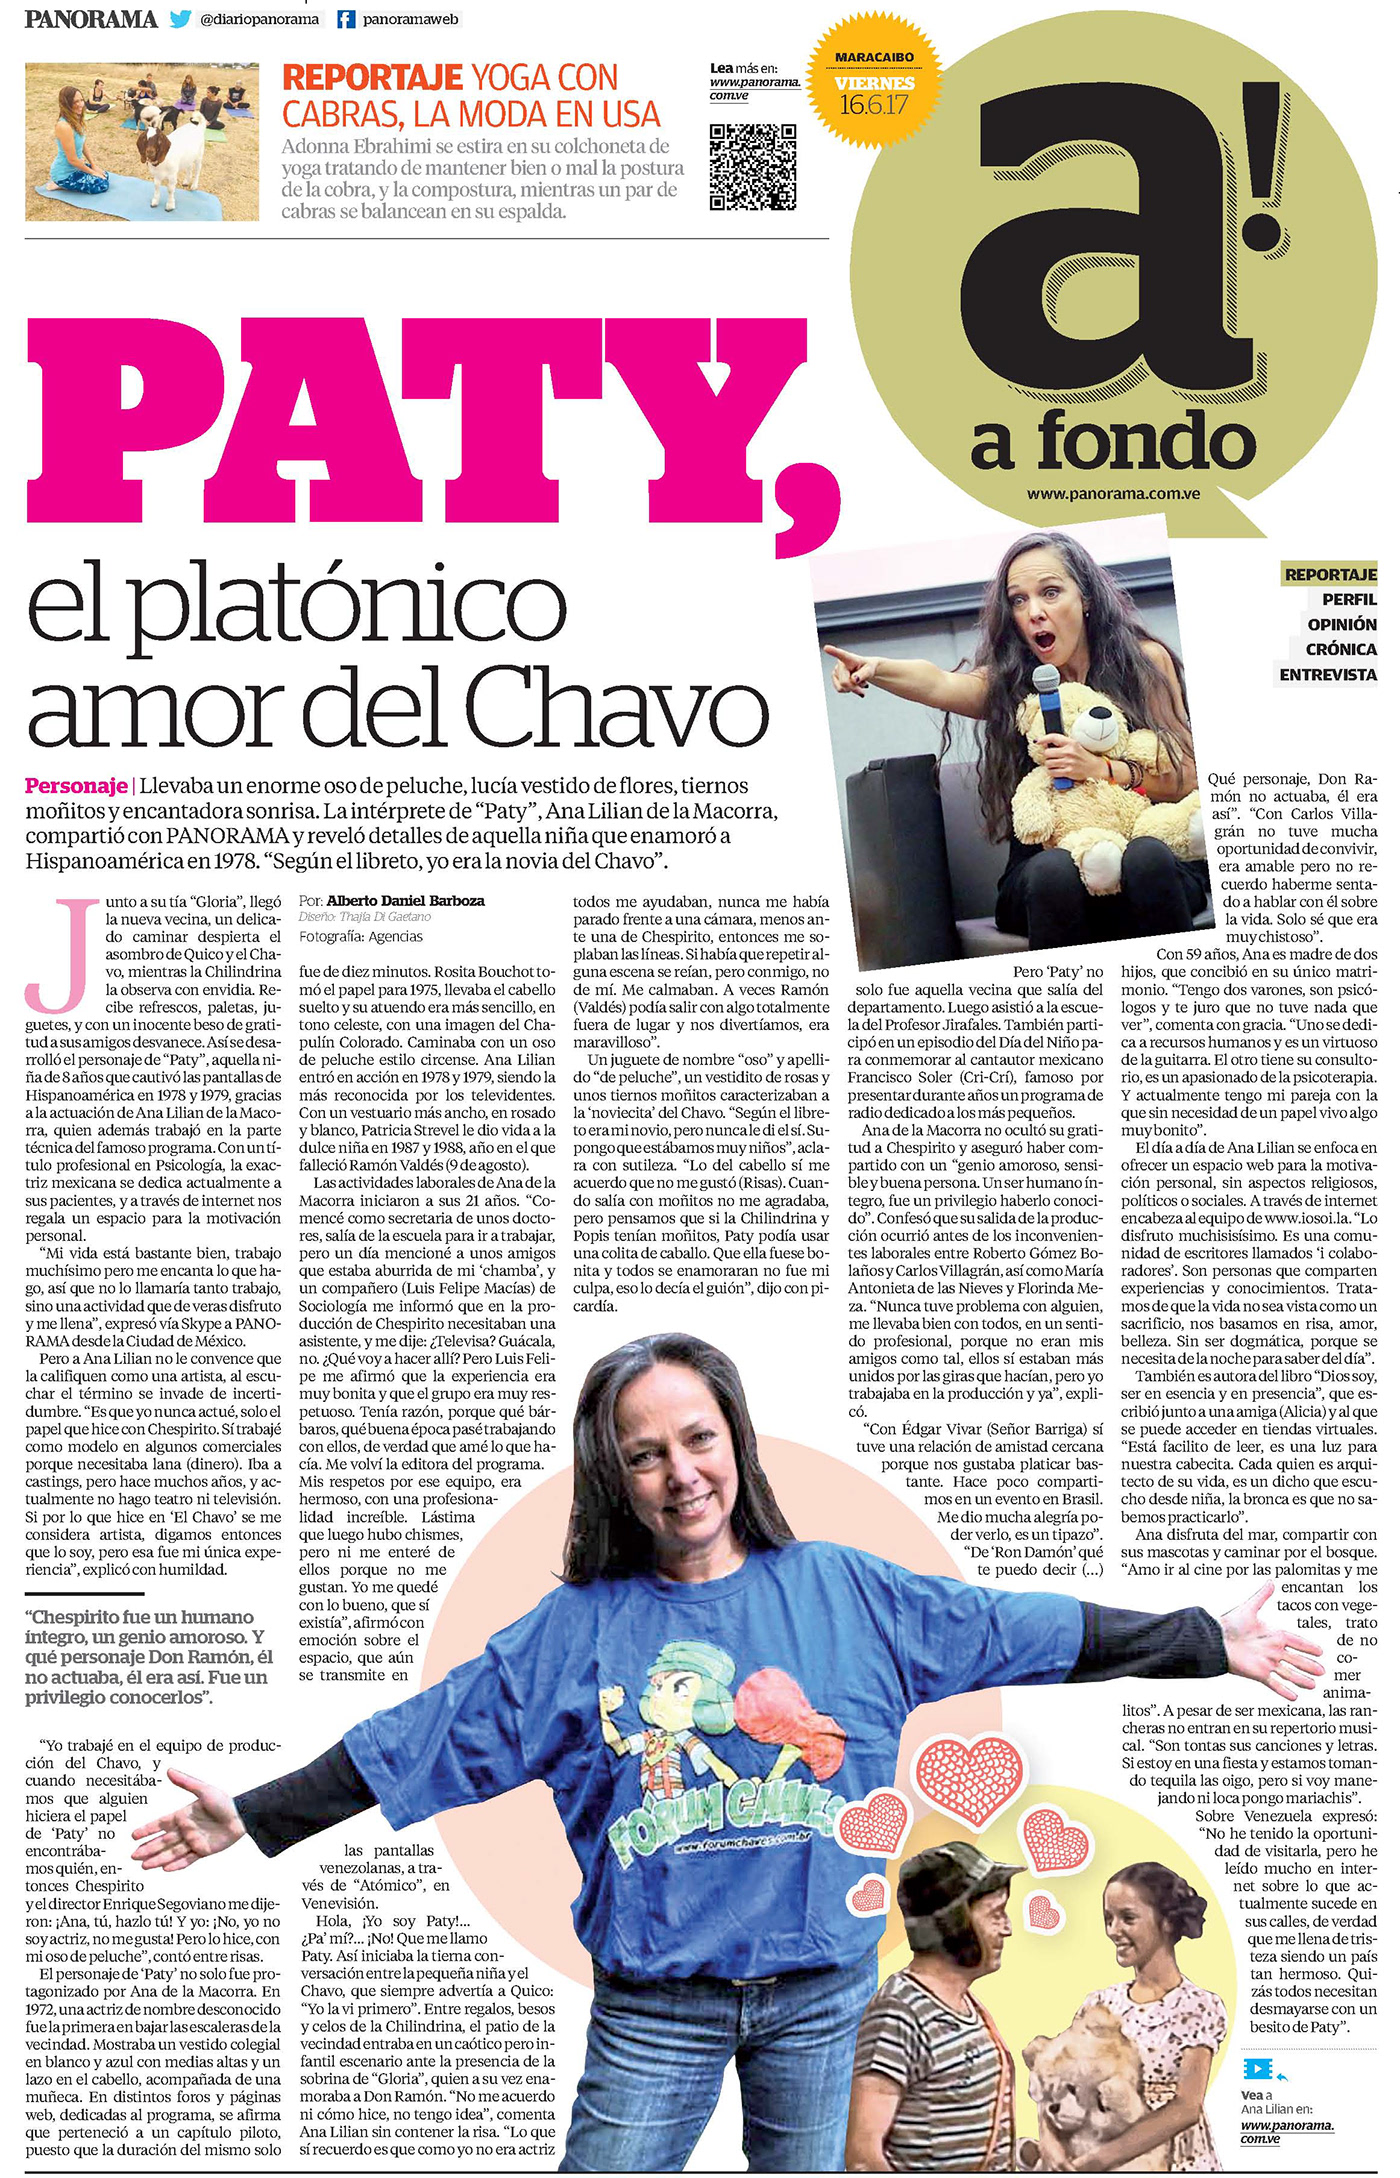 paty El Chavo reportajes espectáculos